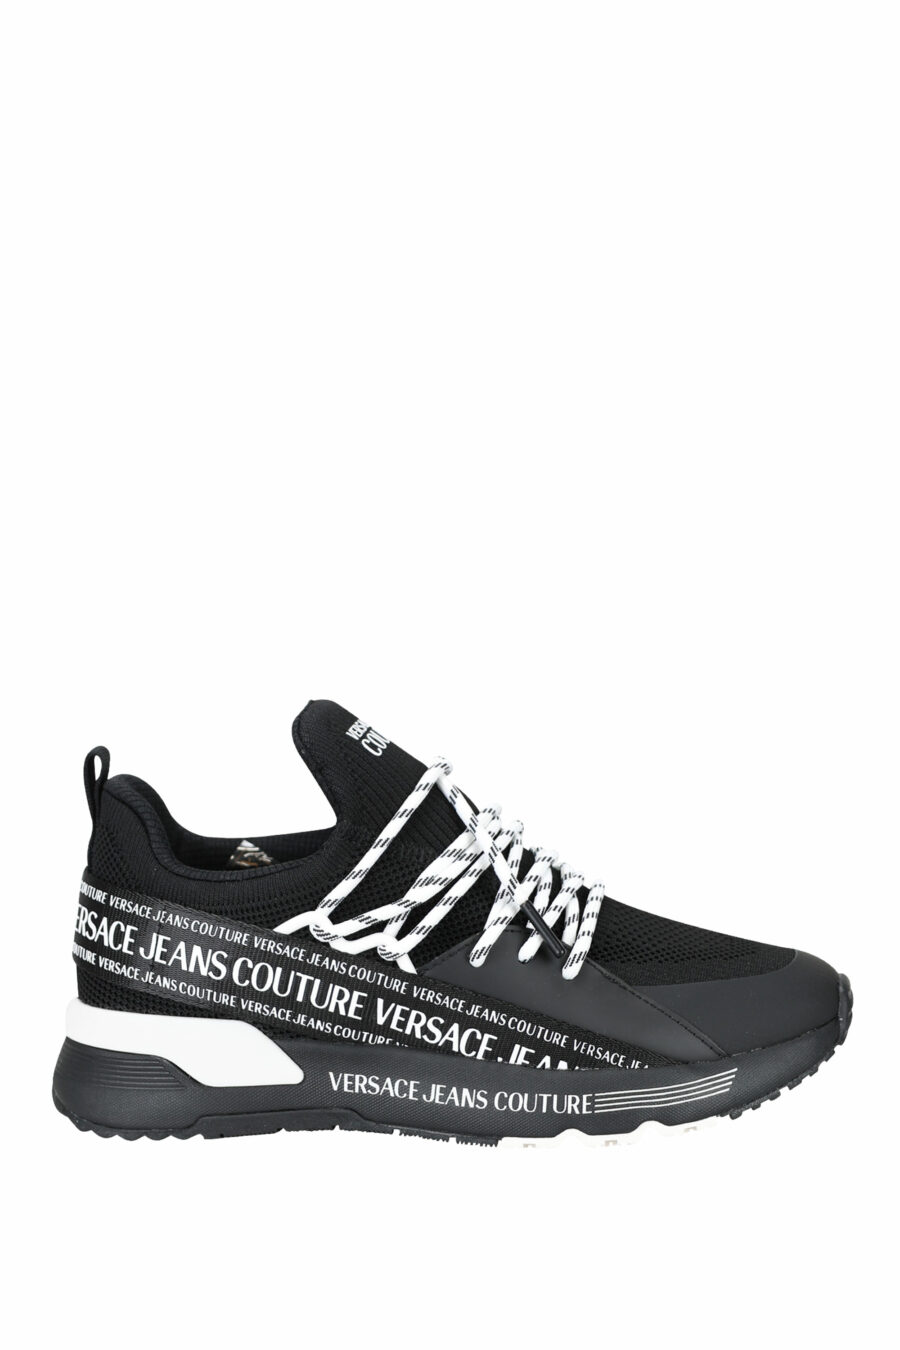 Zapatillas negras "troadlop" con logo en cinta blanco - 8052019454468 1